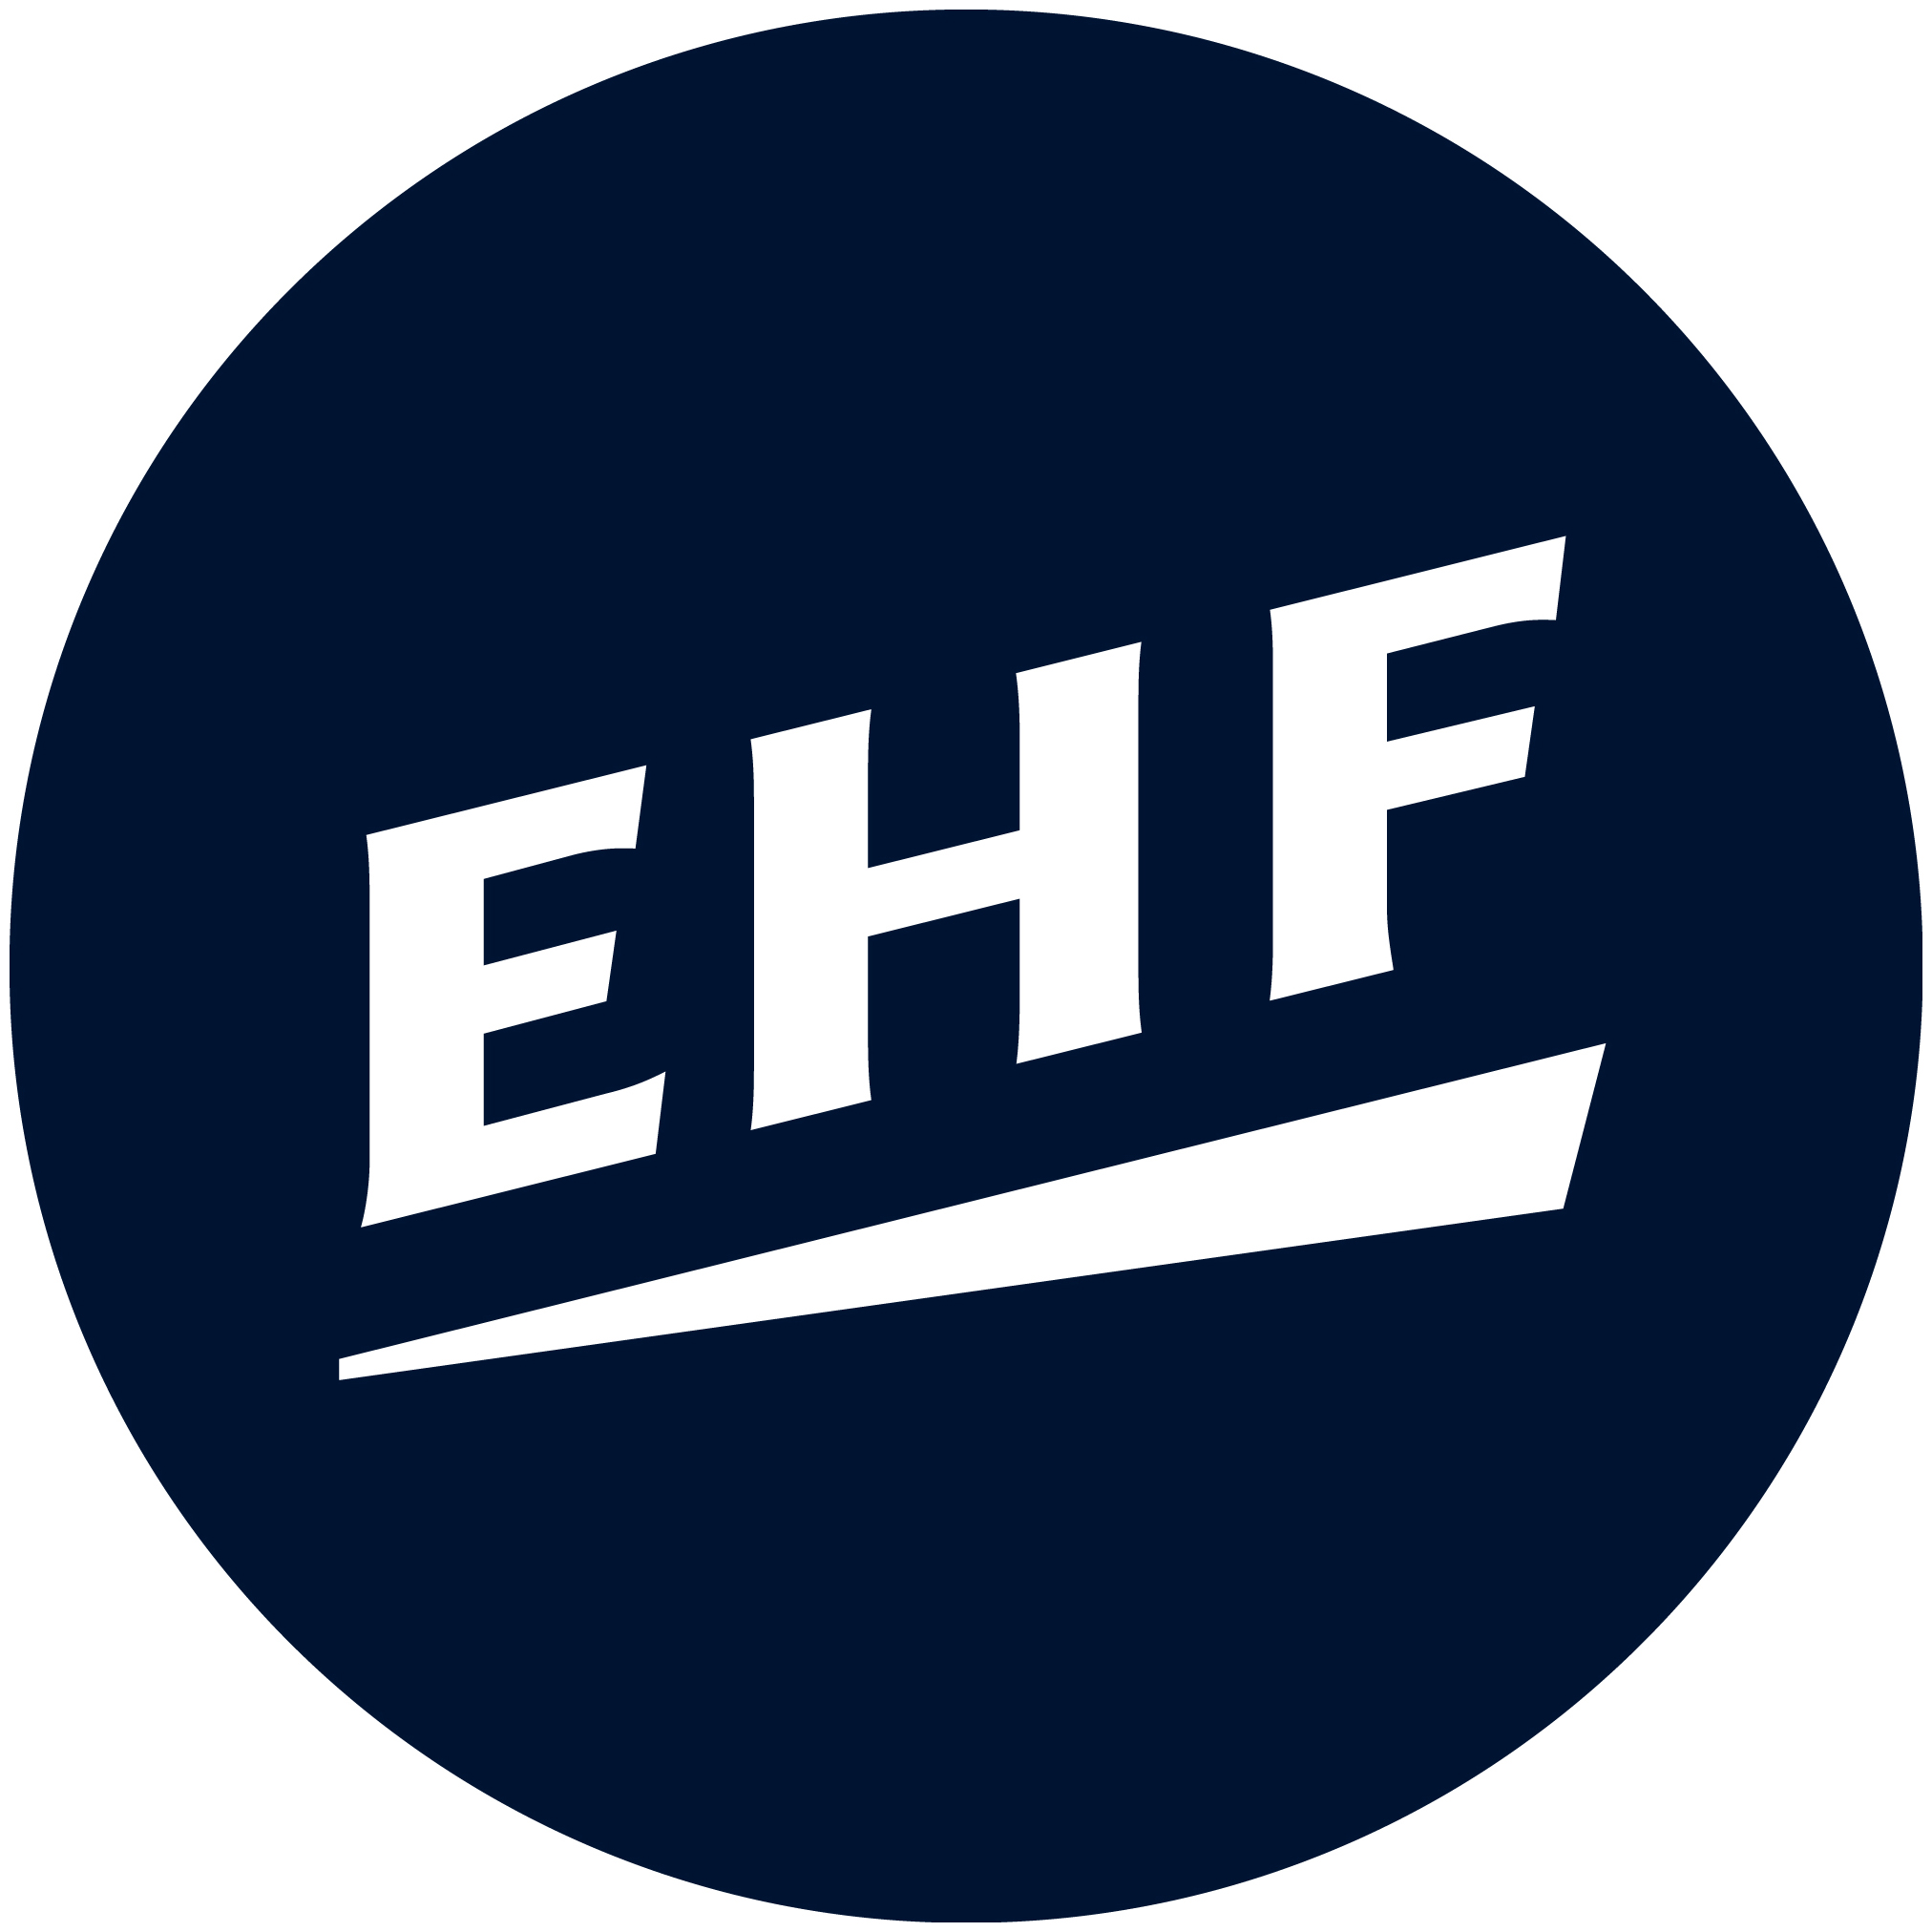 2021 European Handball Men's 18 EHF Championship